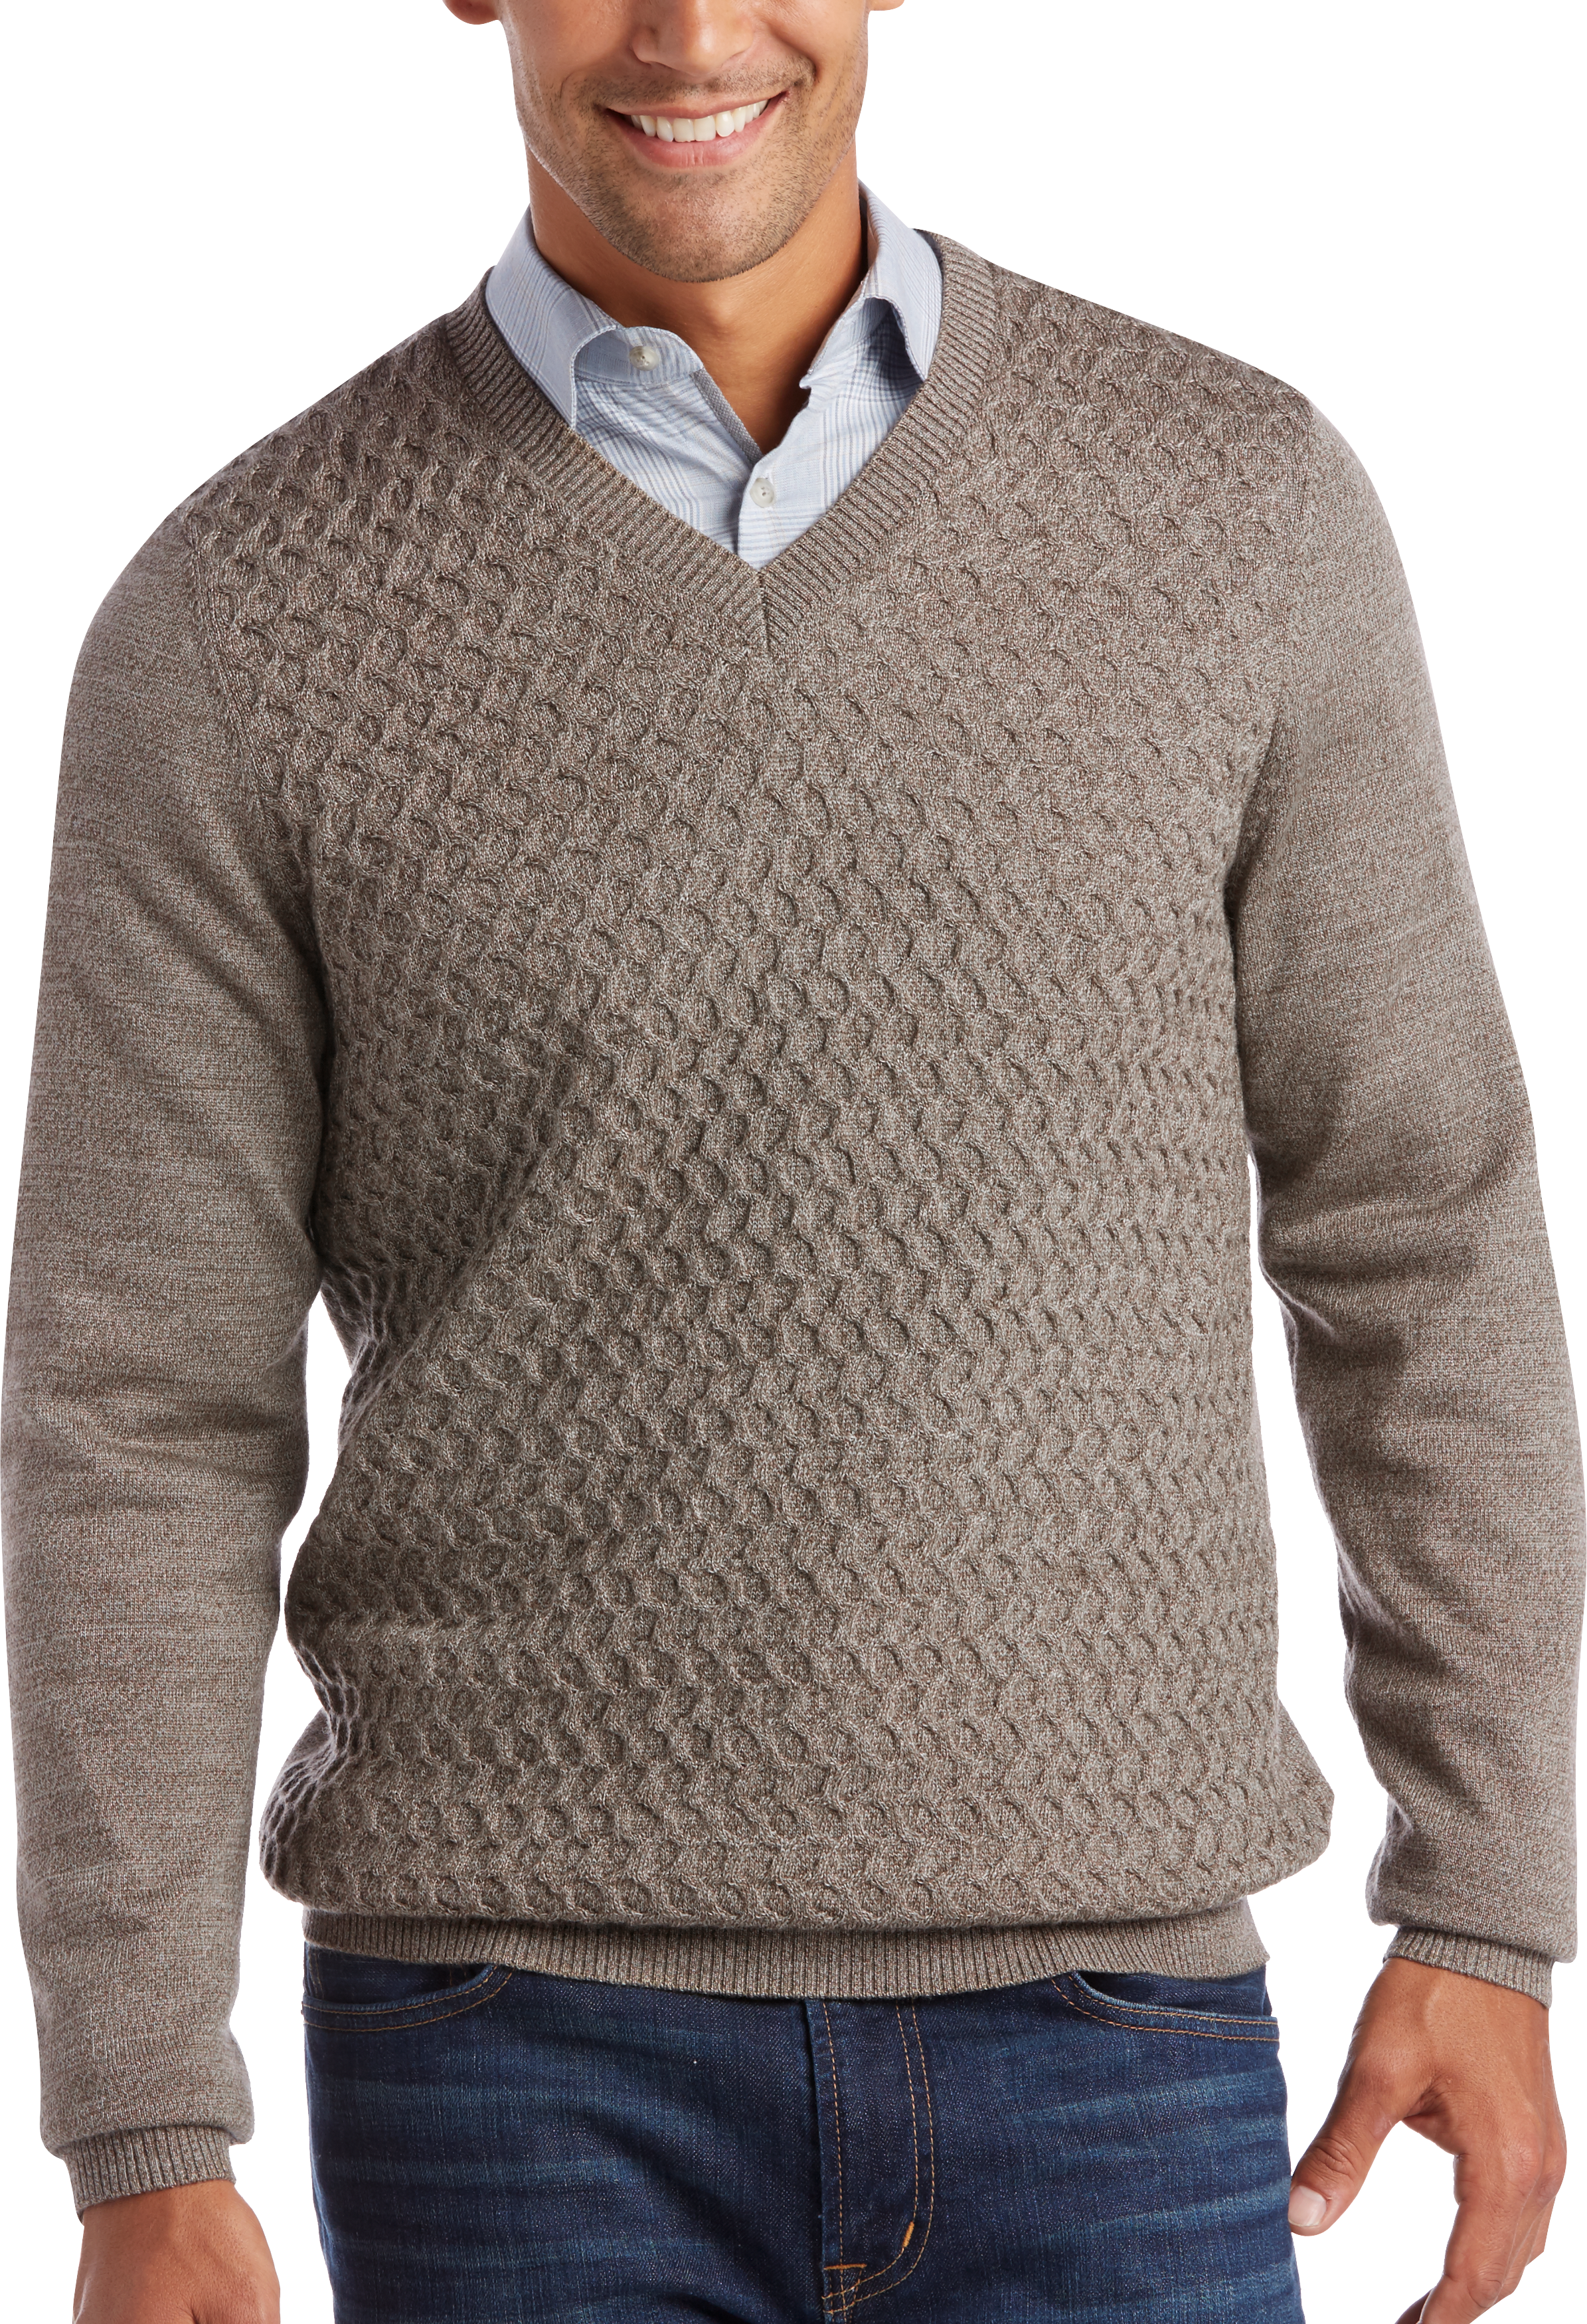 Joseph Abboud Oatmeal V-Neck Sweater - Men's Sweaters | Men's Wearhouse